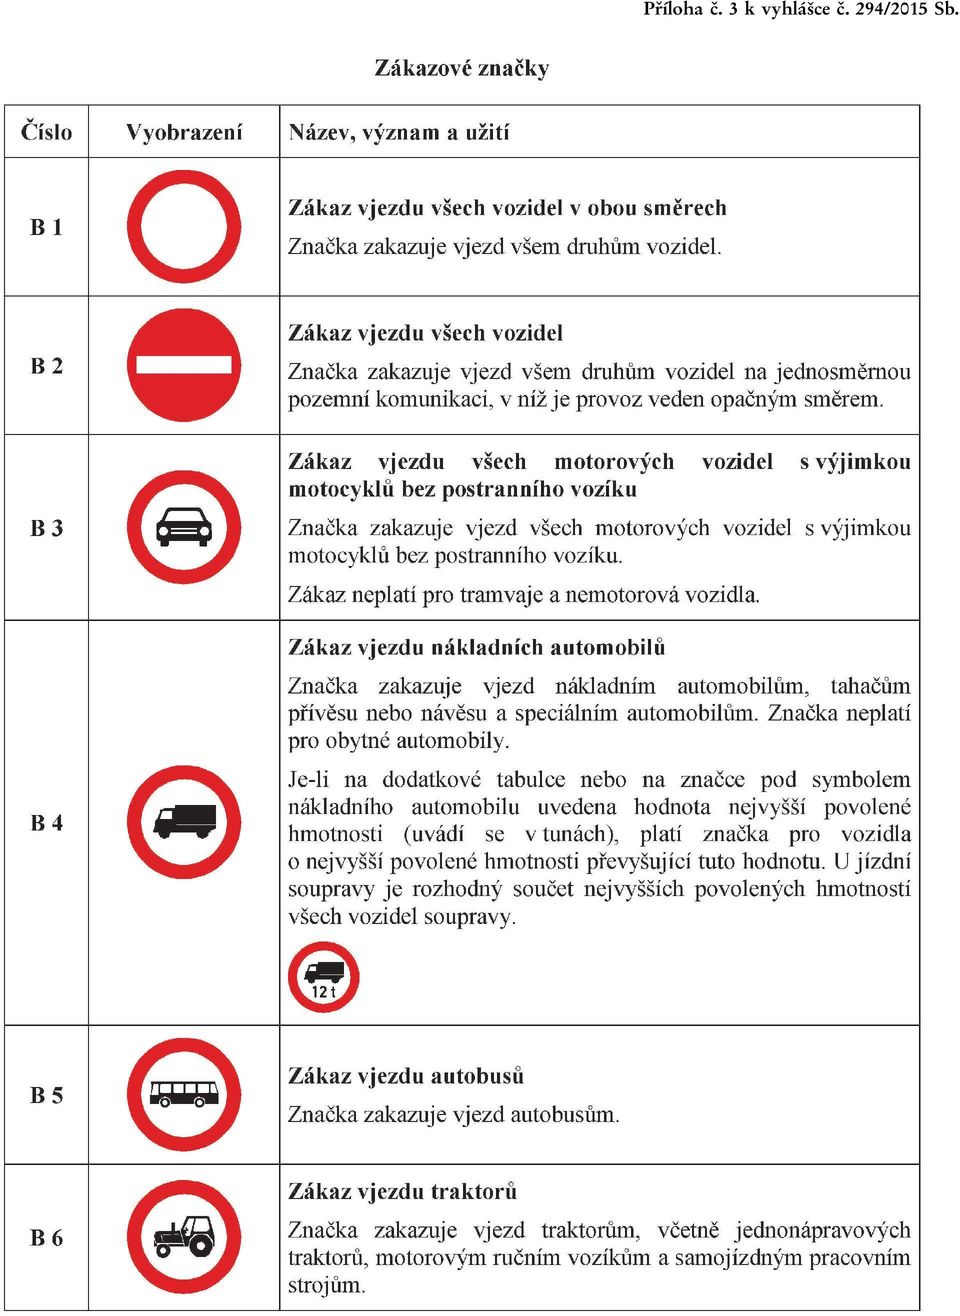 Zákaz vjzdu všch motorových vozidl s výjimkou motocyklů bz postranního vozíku Značka zakazuj vjzd všch motorových vozidl s výjimkou motocyklů bz postranního vozíku.